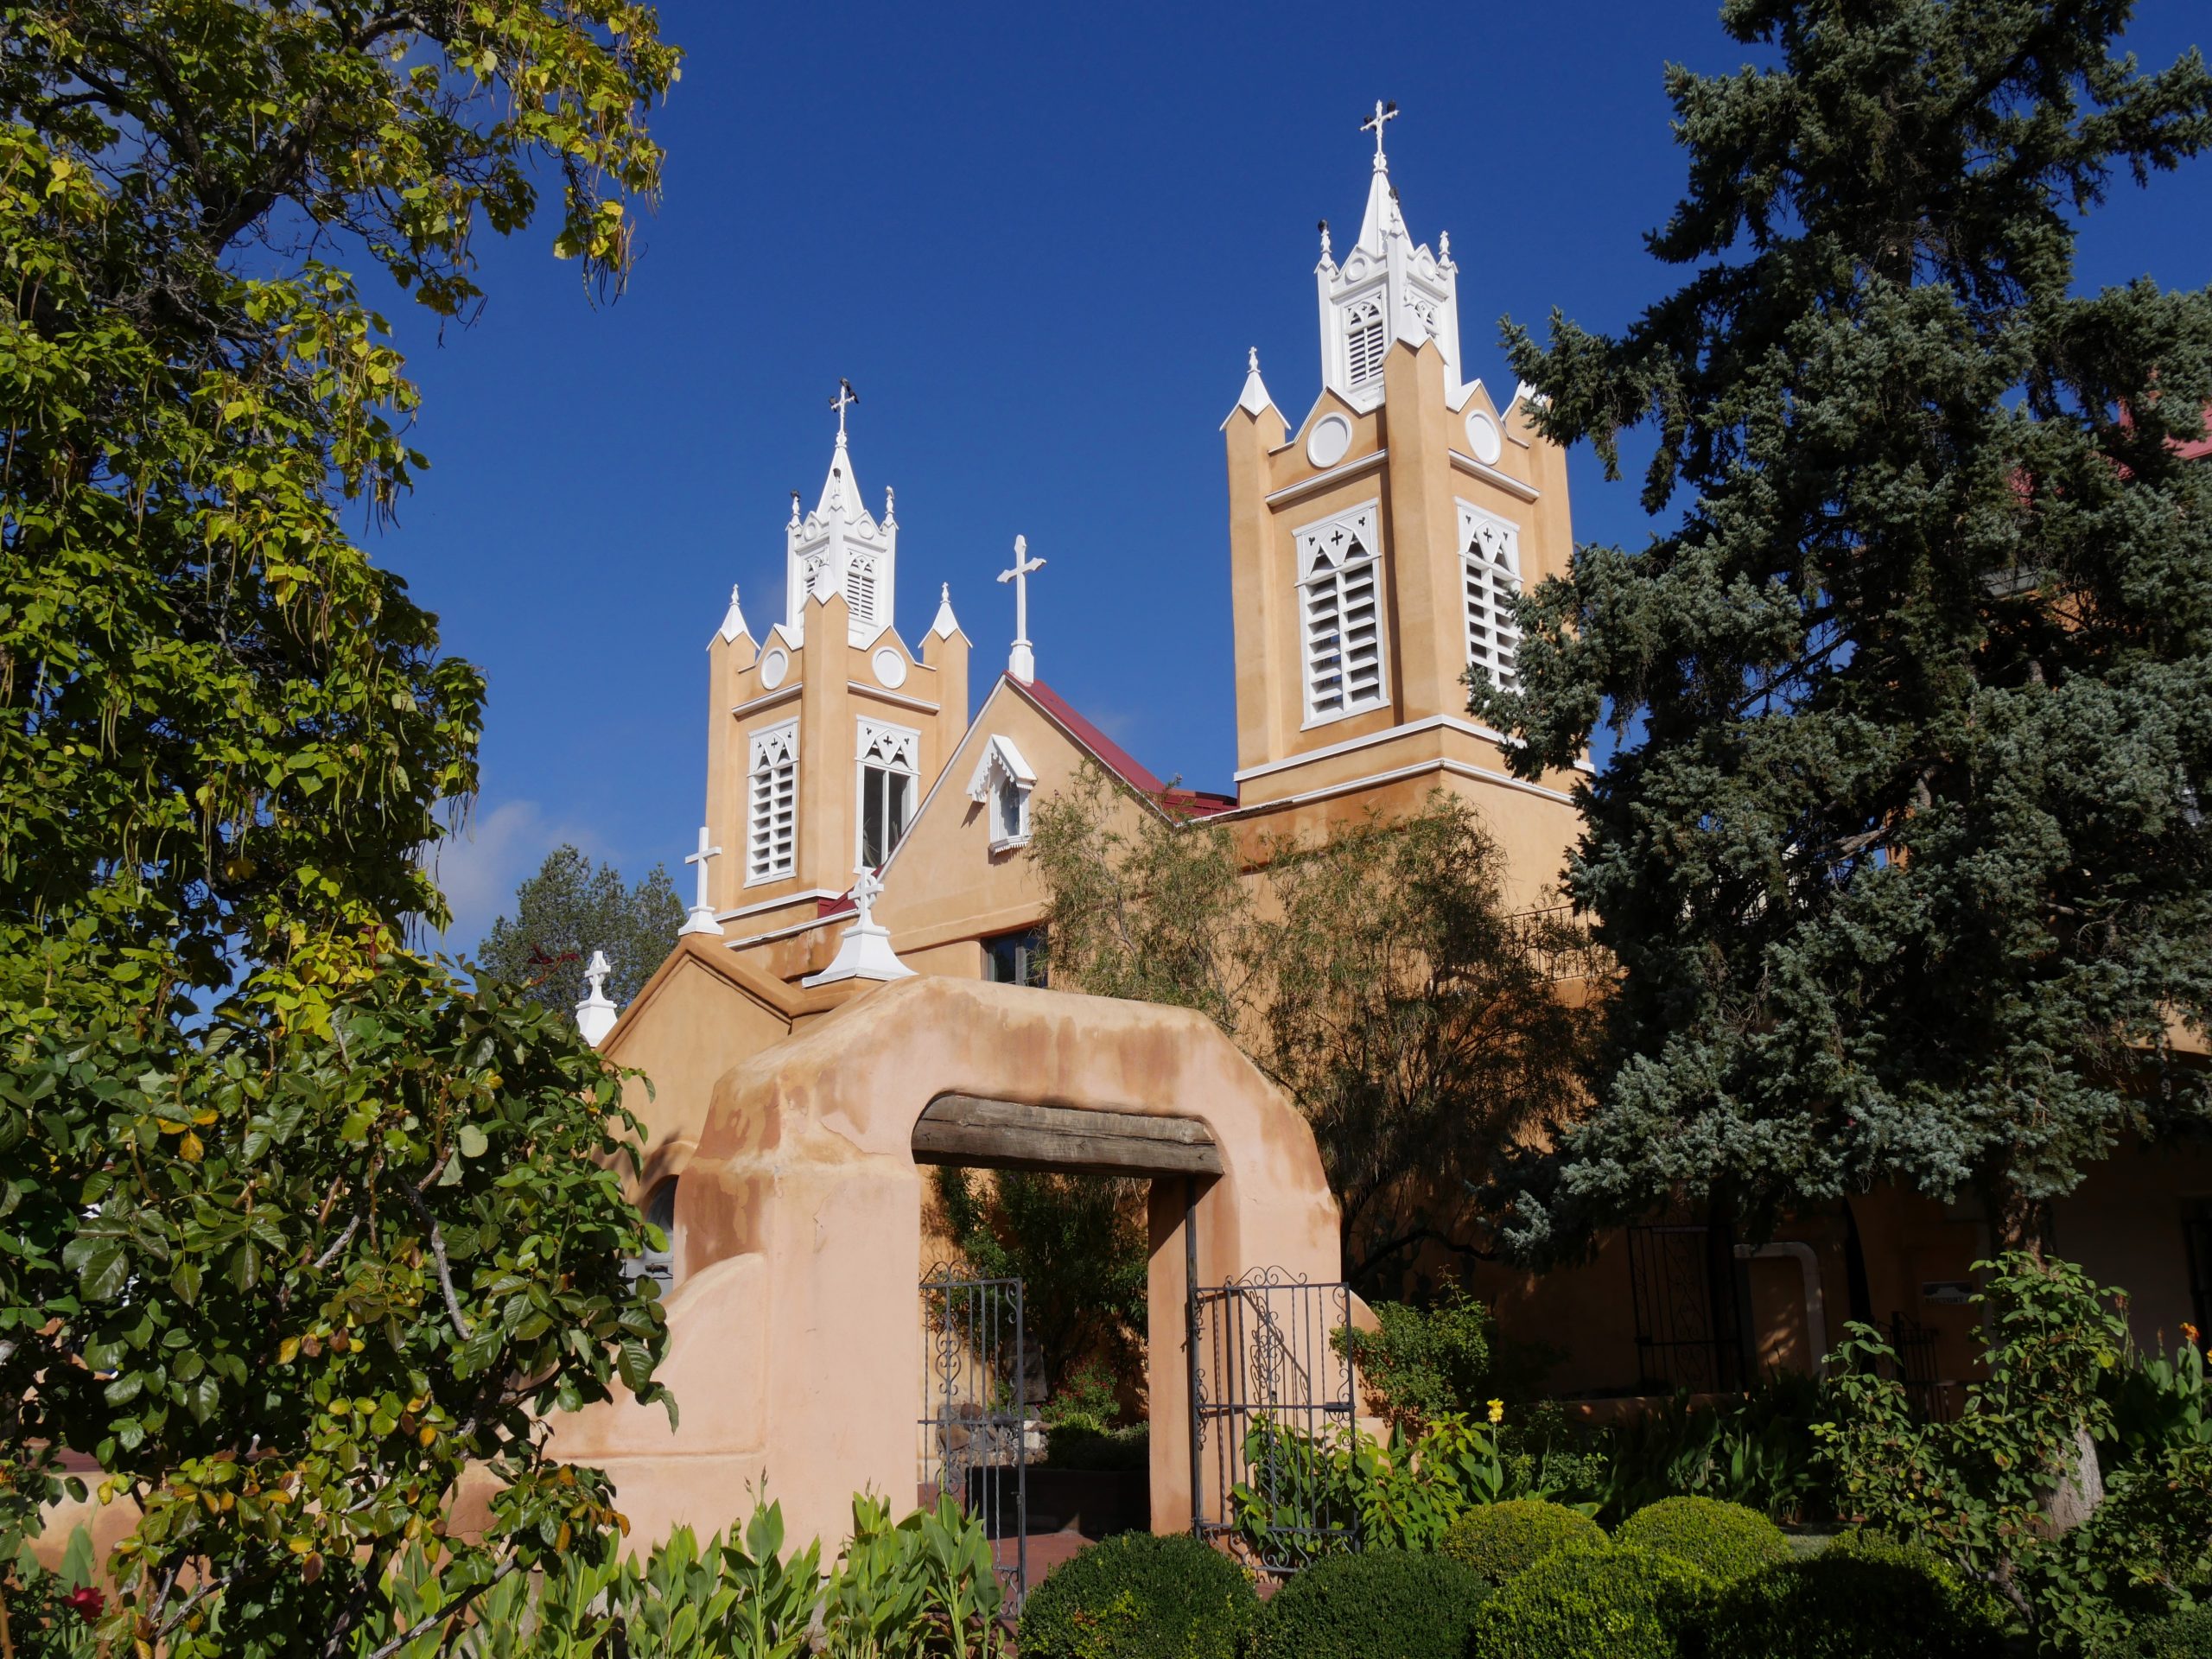 San Felipe de Neri Church in Albuquerque, NM